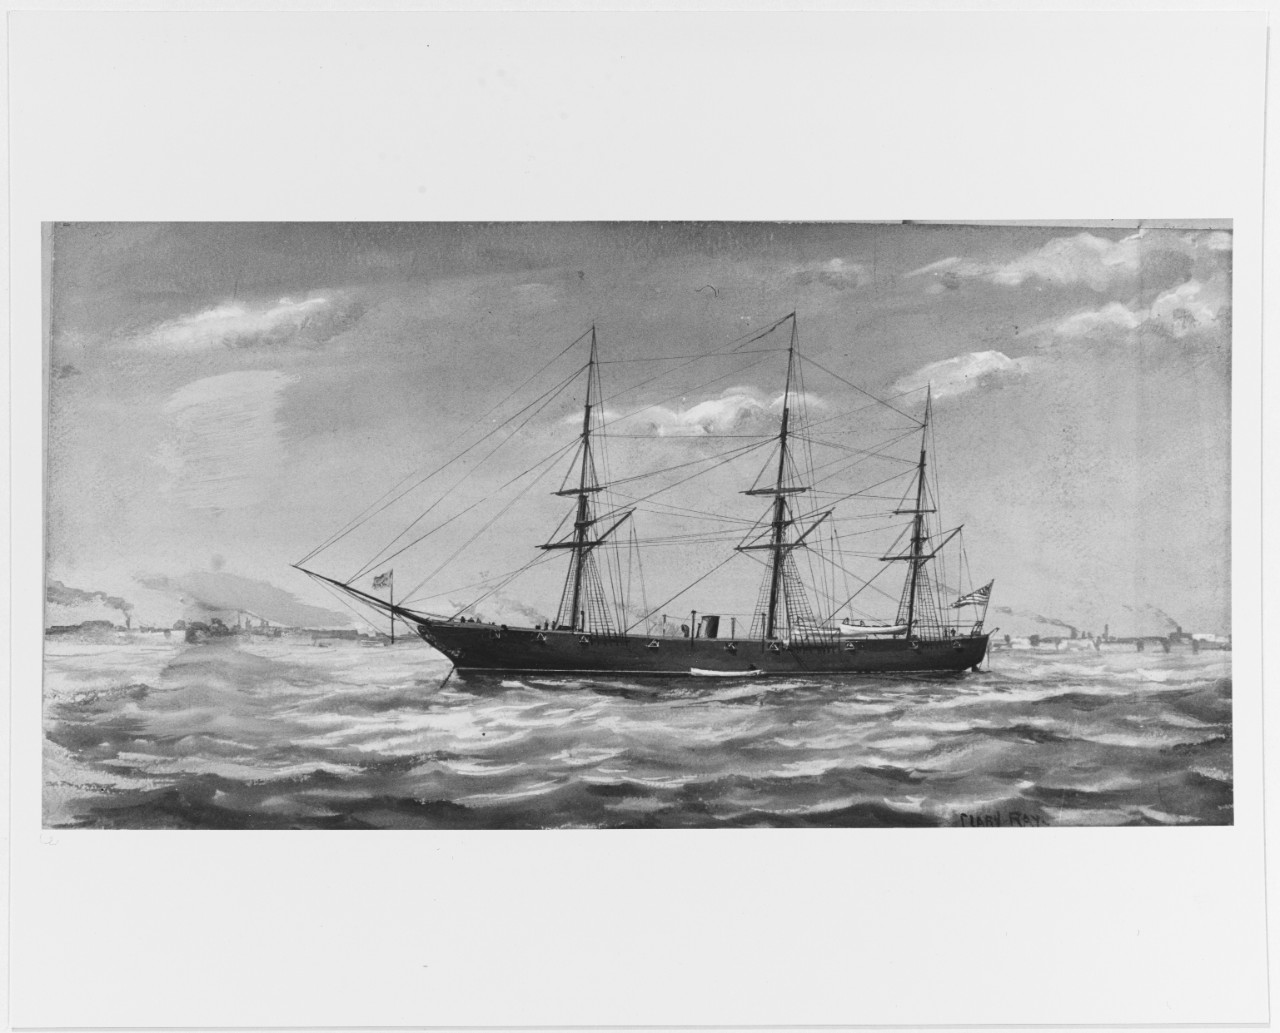 USS JUNIATA (1826-1891)